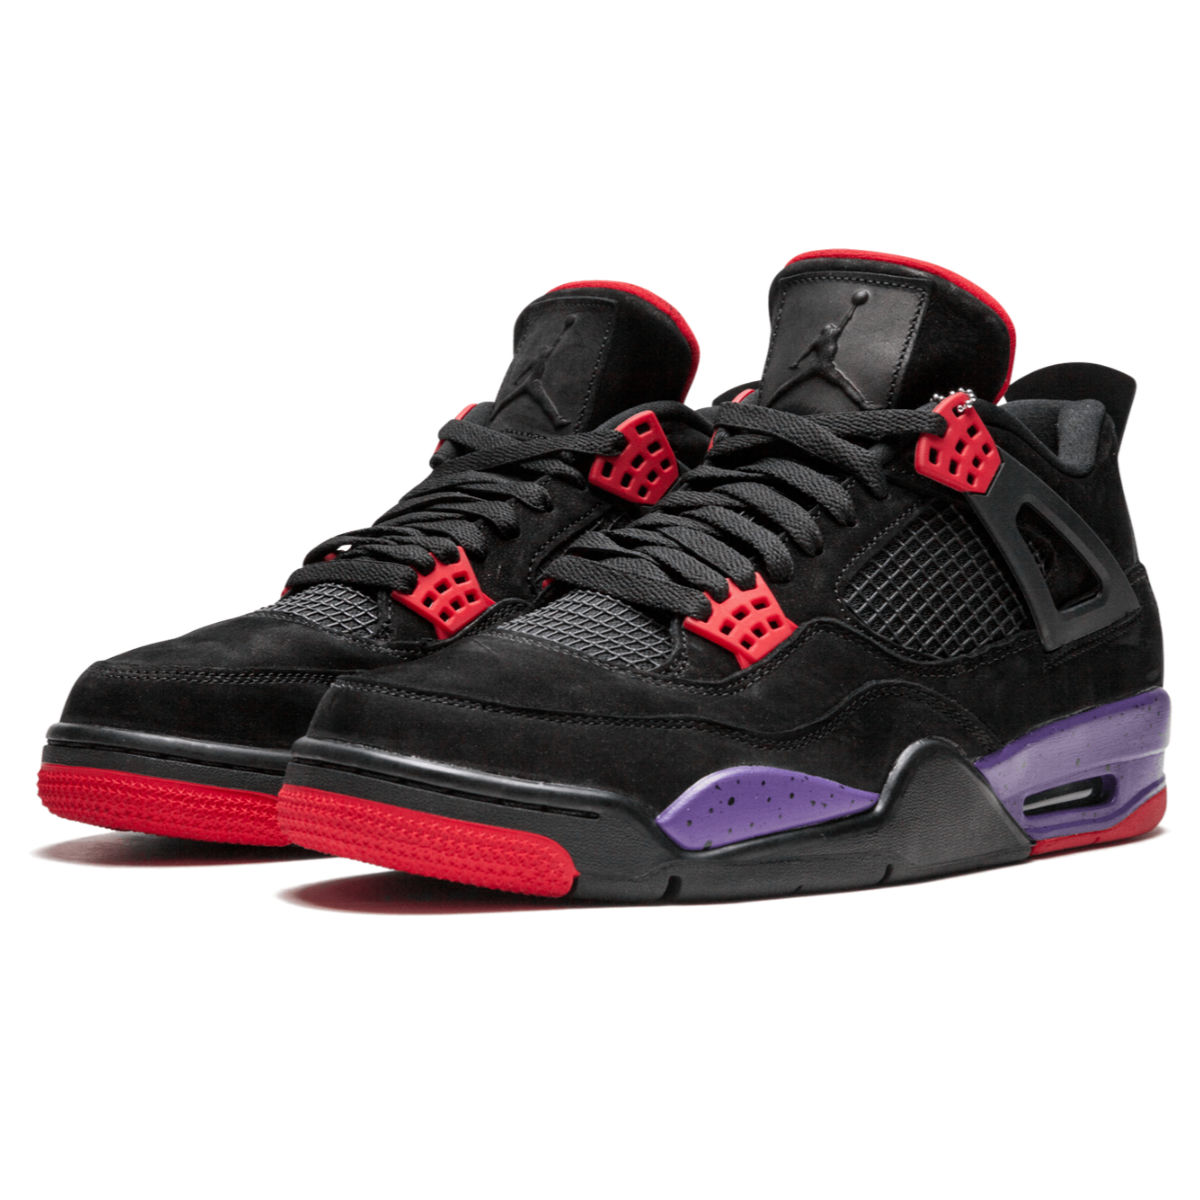 Air Jordan 4 Retro NRG Raptors Men's Basketball Shoes